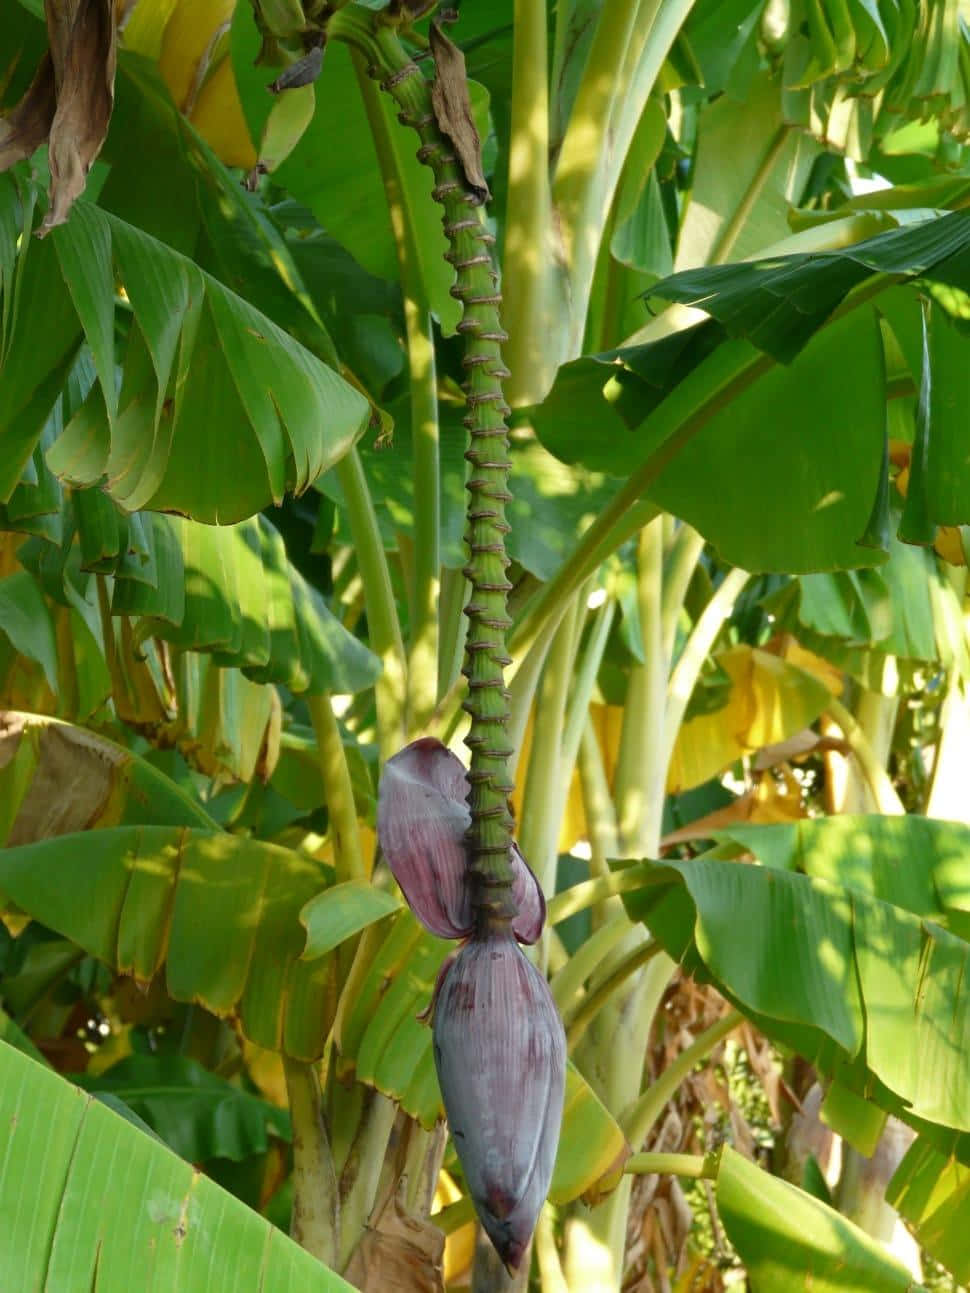 Tendendoverso Il Sole - Una Fila Infinita Di Alberi Di Banana